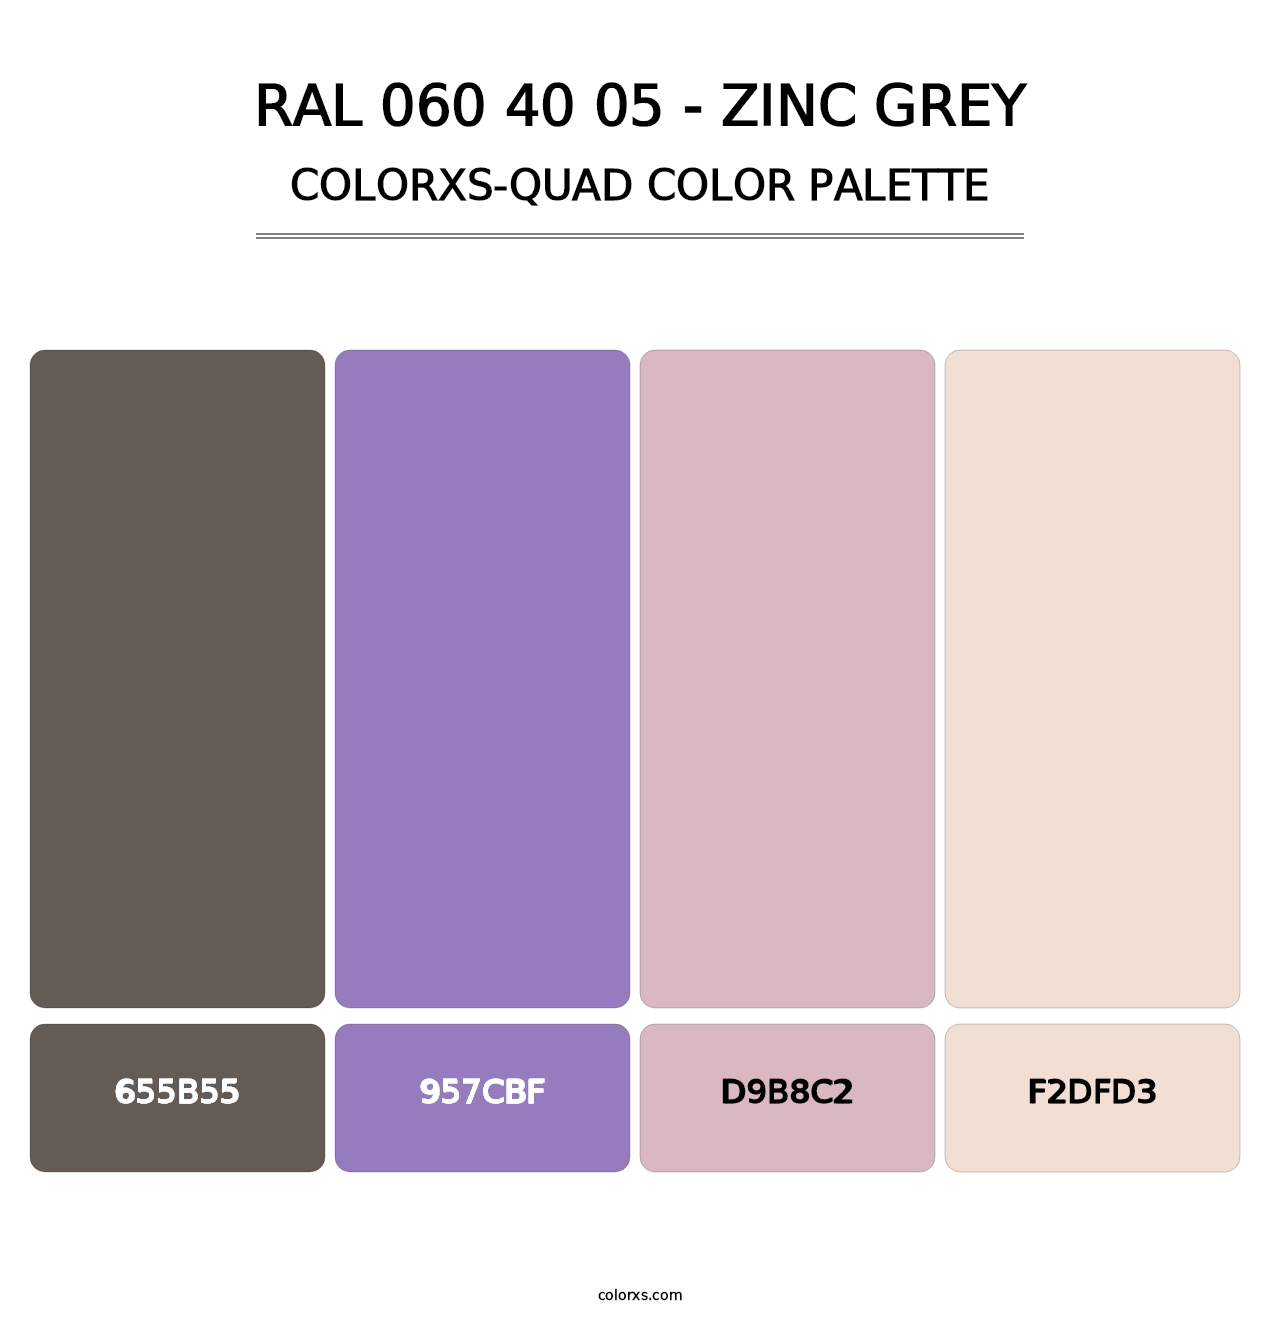 RAL 060 40 05 - Zinc Grey - Colorxs Quad Palette